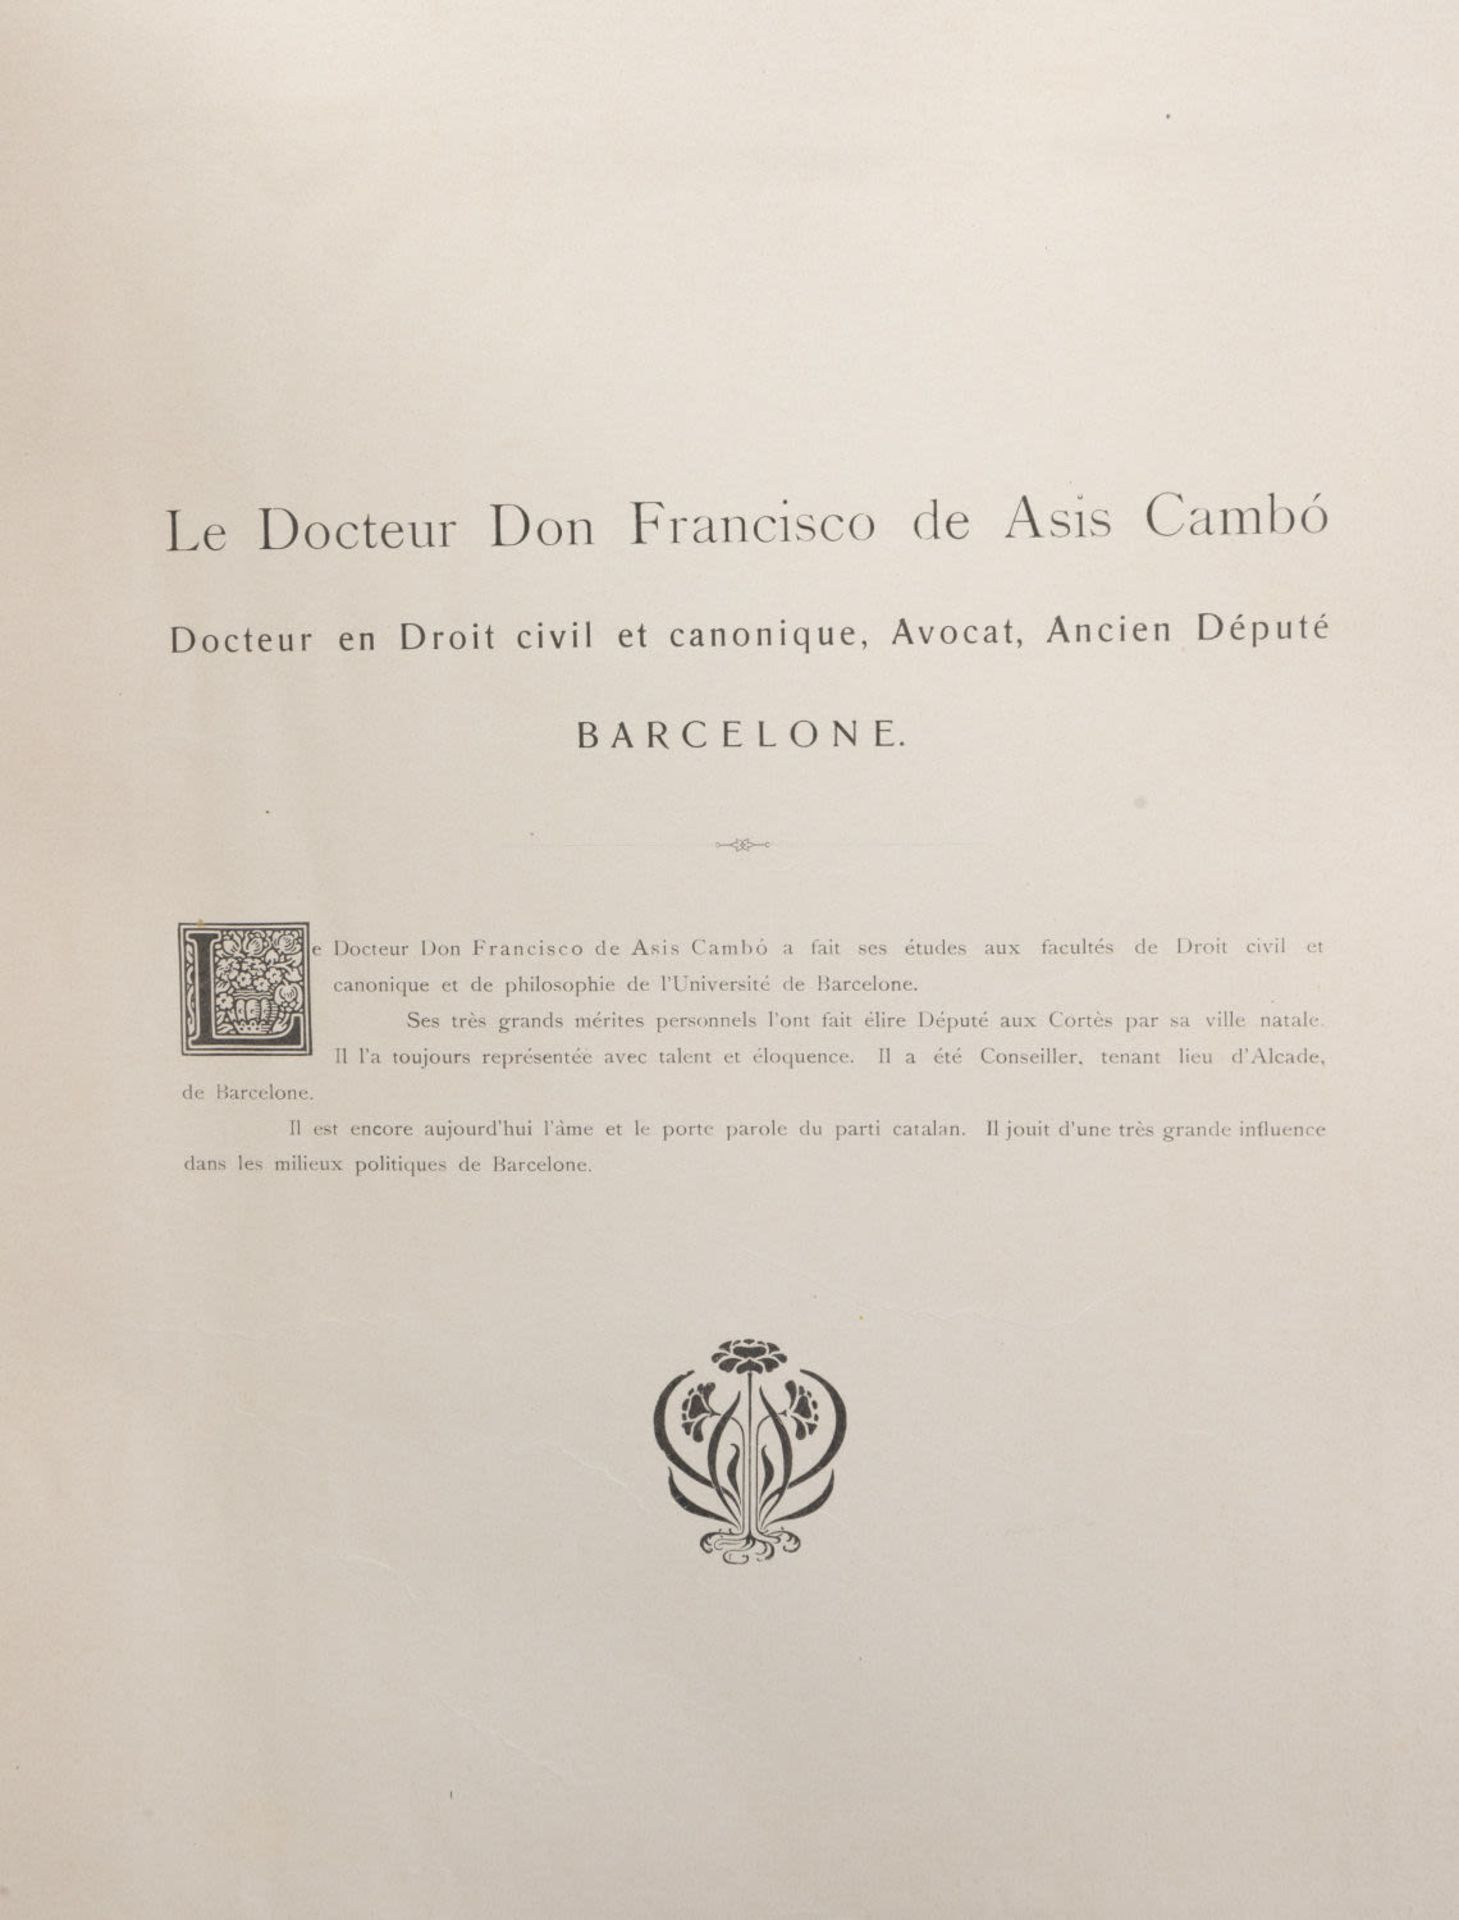 Book "l'Espagne Contemporaine", 19th century - Bild 5 aus 8